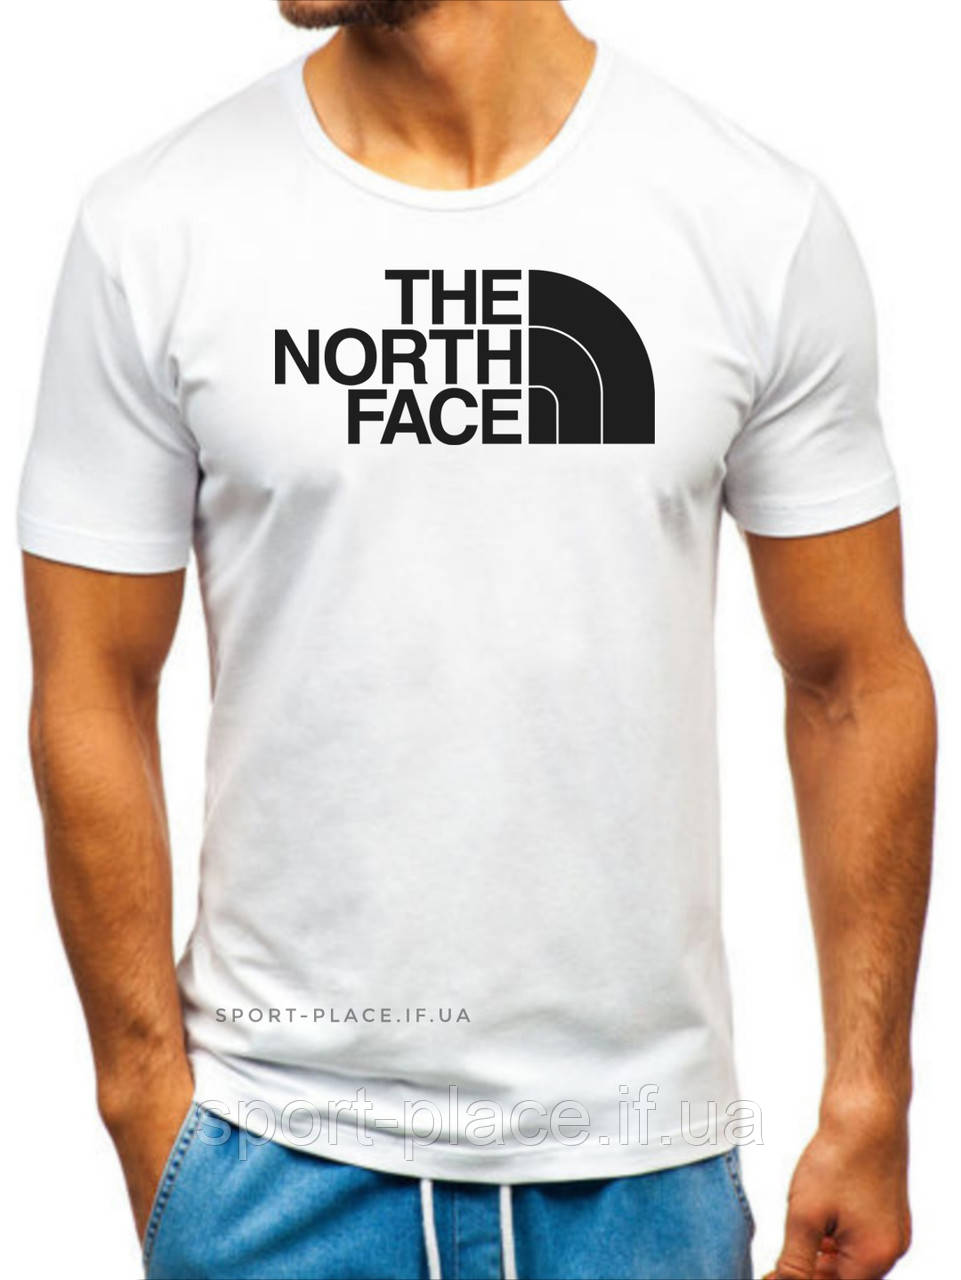 Чоловіча футболка The North Face (Норс Фейс) біла (велика емблема) бавовна